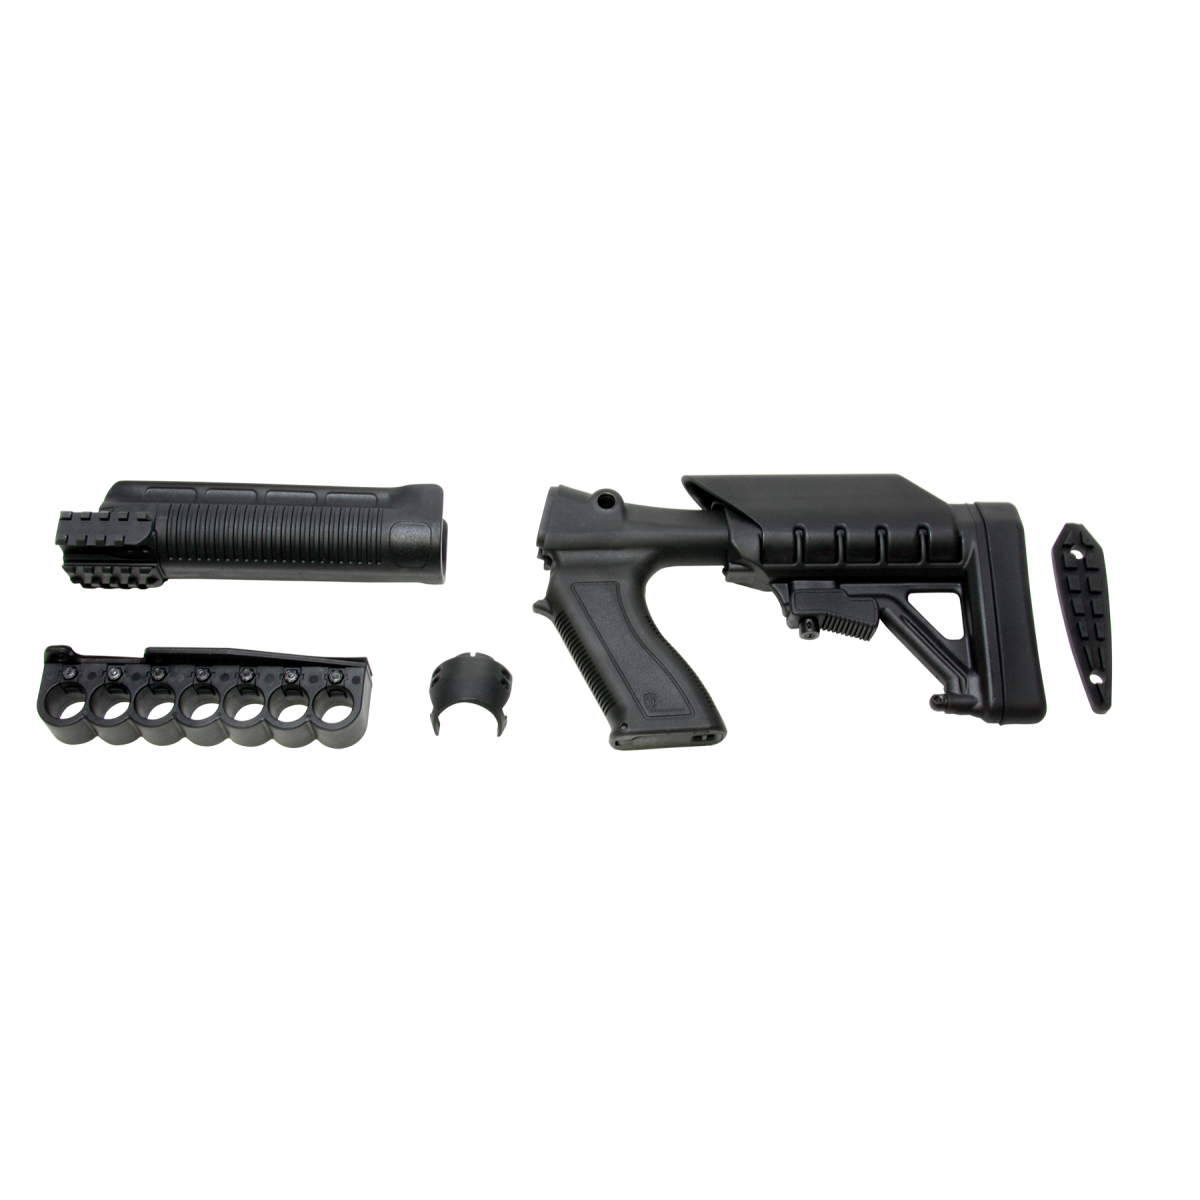 Promag Archangel Remington Model 870 12 Gauge Polymer Tactical Pistol